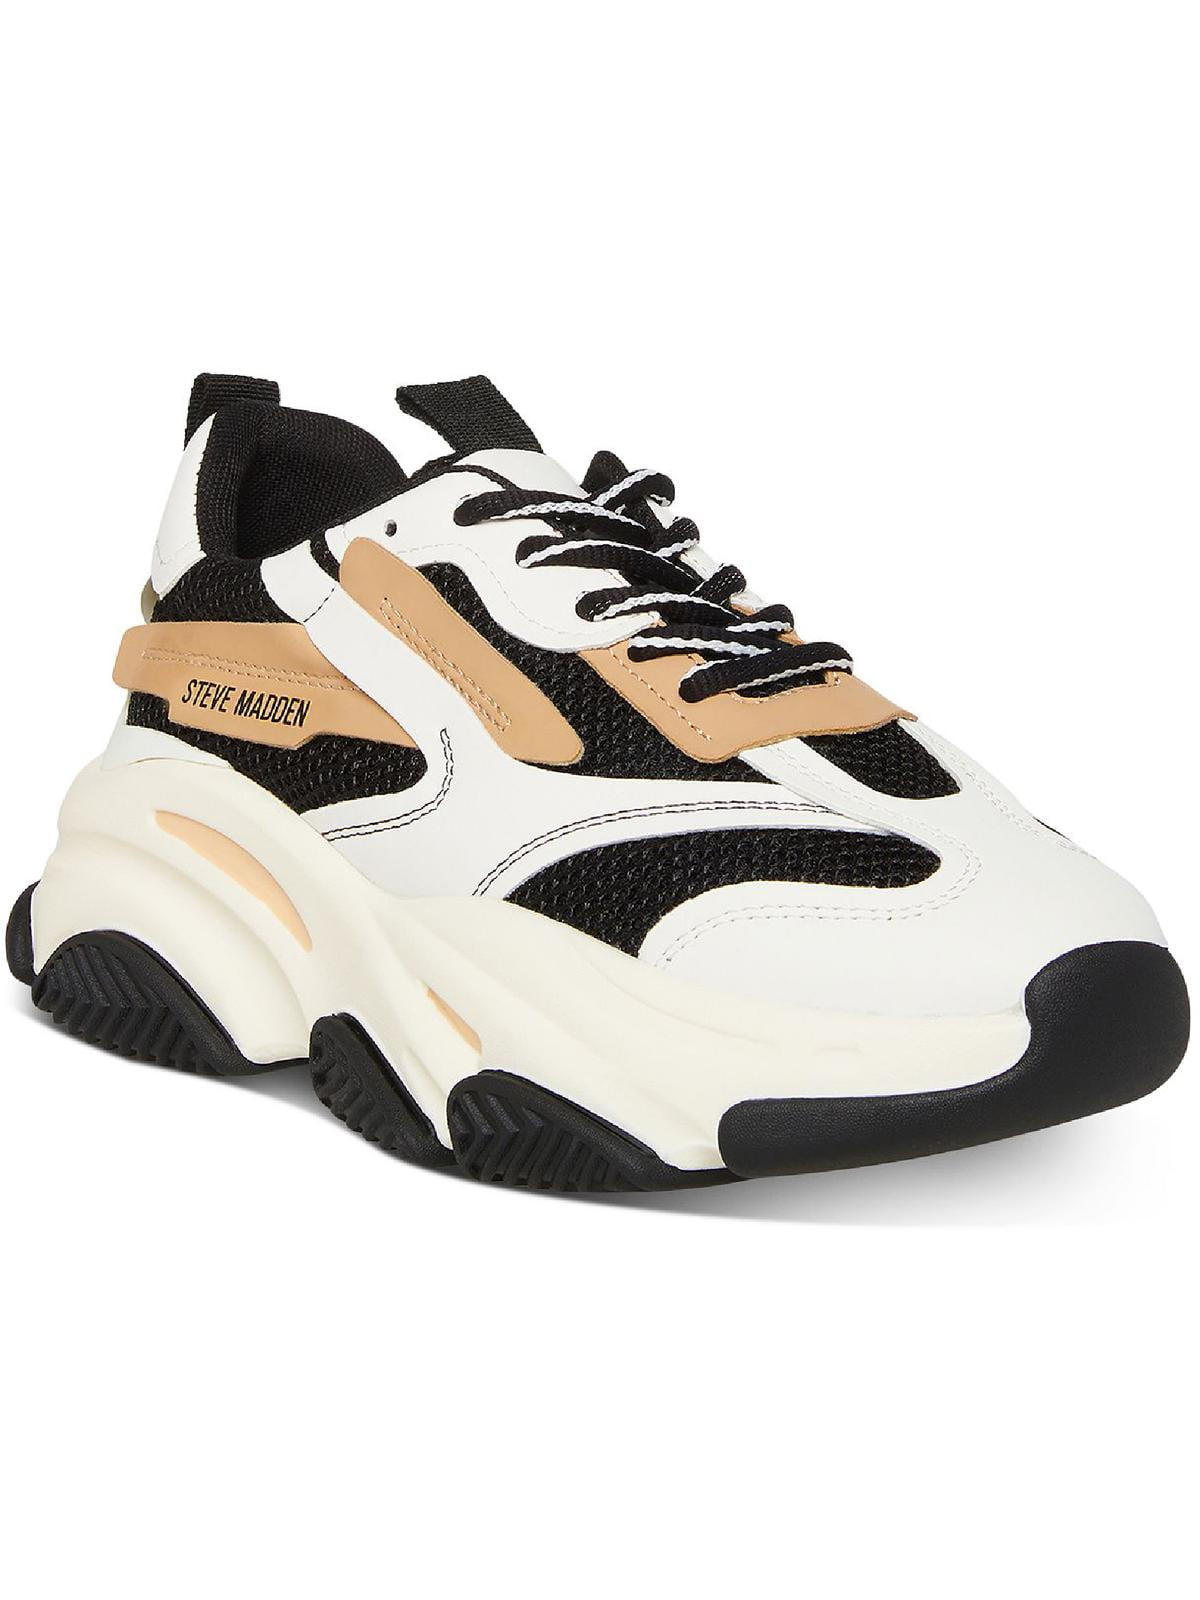 Steve Madden Sneakers Sizes:-6,7,7.5,8.5 women $1400 | Instagram